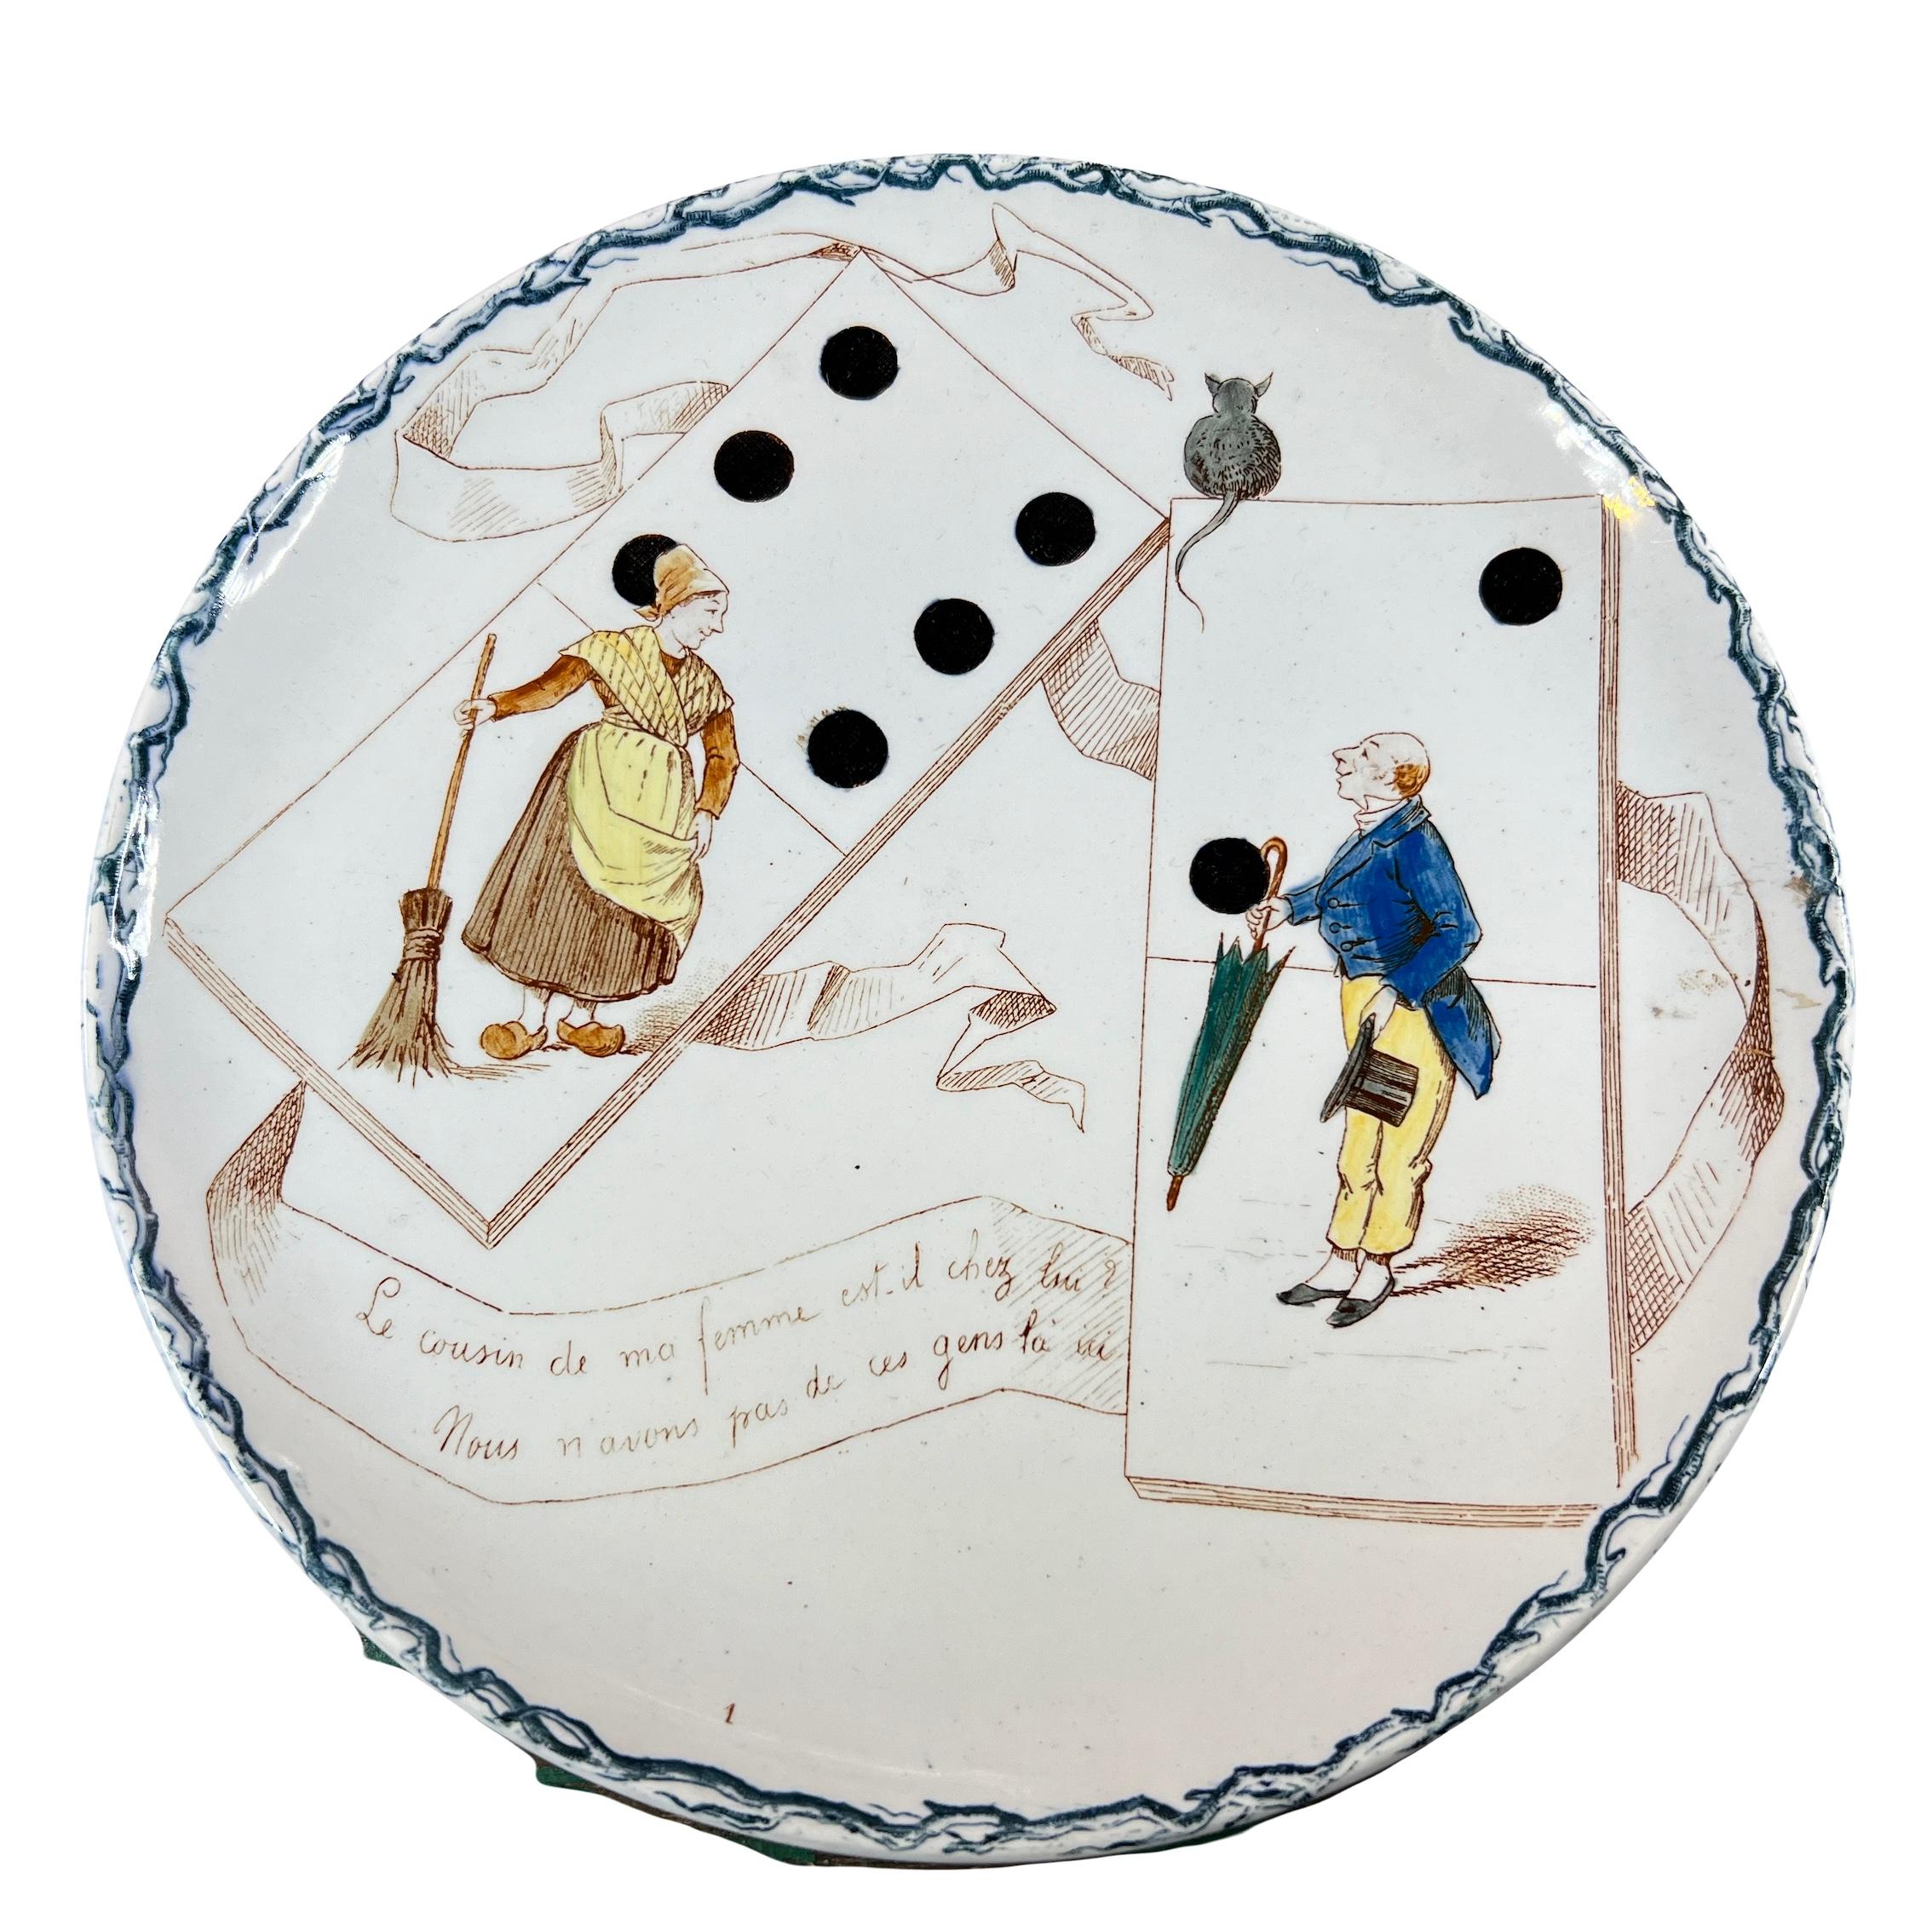 Ensemble de 2 assiettes humoristique sur le thème des jeux anciens, les dominos, par la manufacture française de Creil Montereau en 1890.

Sur l’assiette, nous voyons une femme en sabot, un balai à la main et sans l'autre un homme avec un parapluie